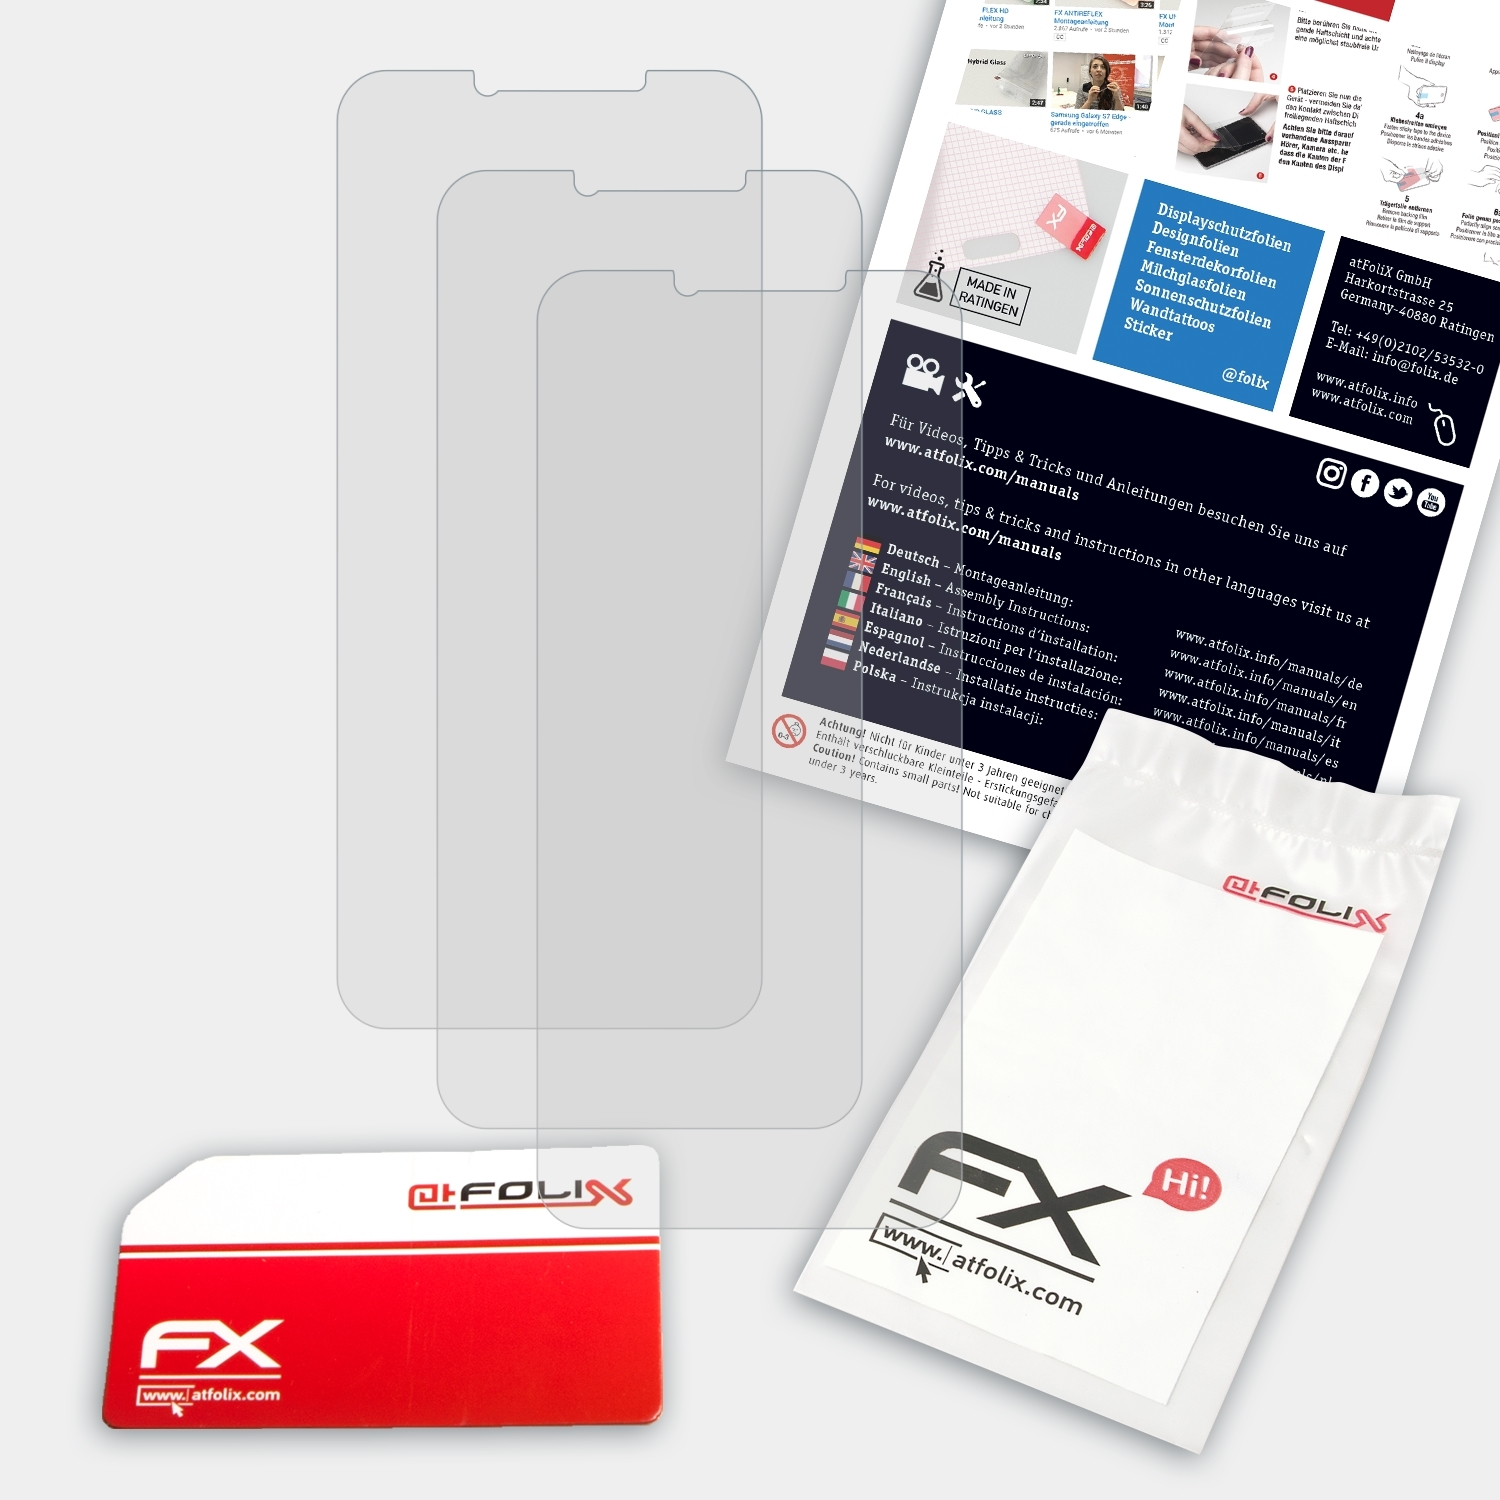 A3S) FX-Antireflex 3x Displayschutz(für ATFOLIX UMiDigi